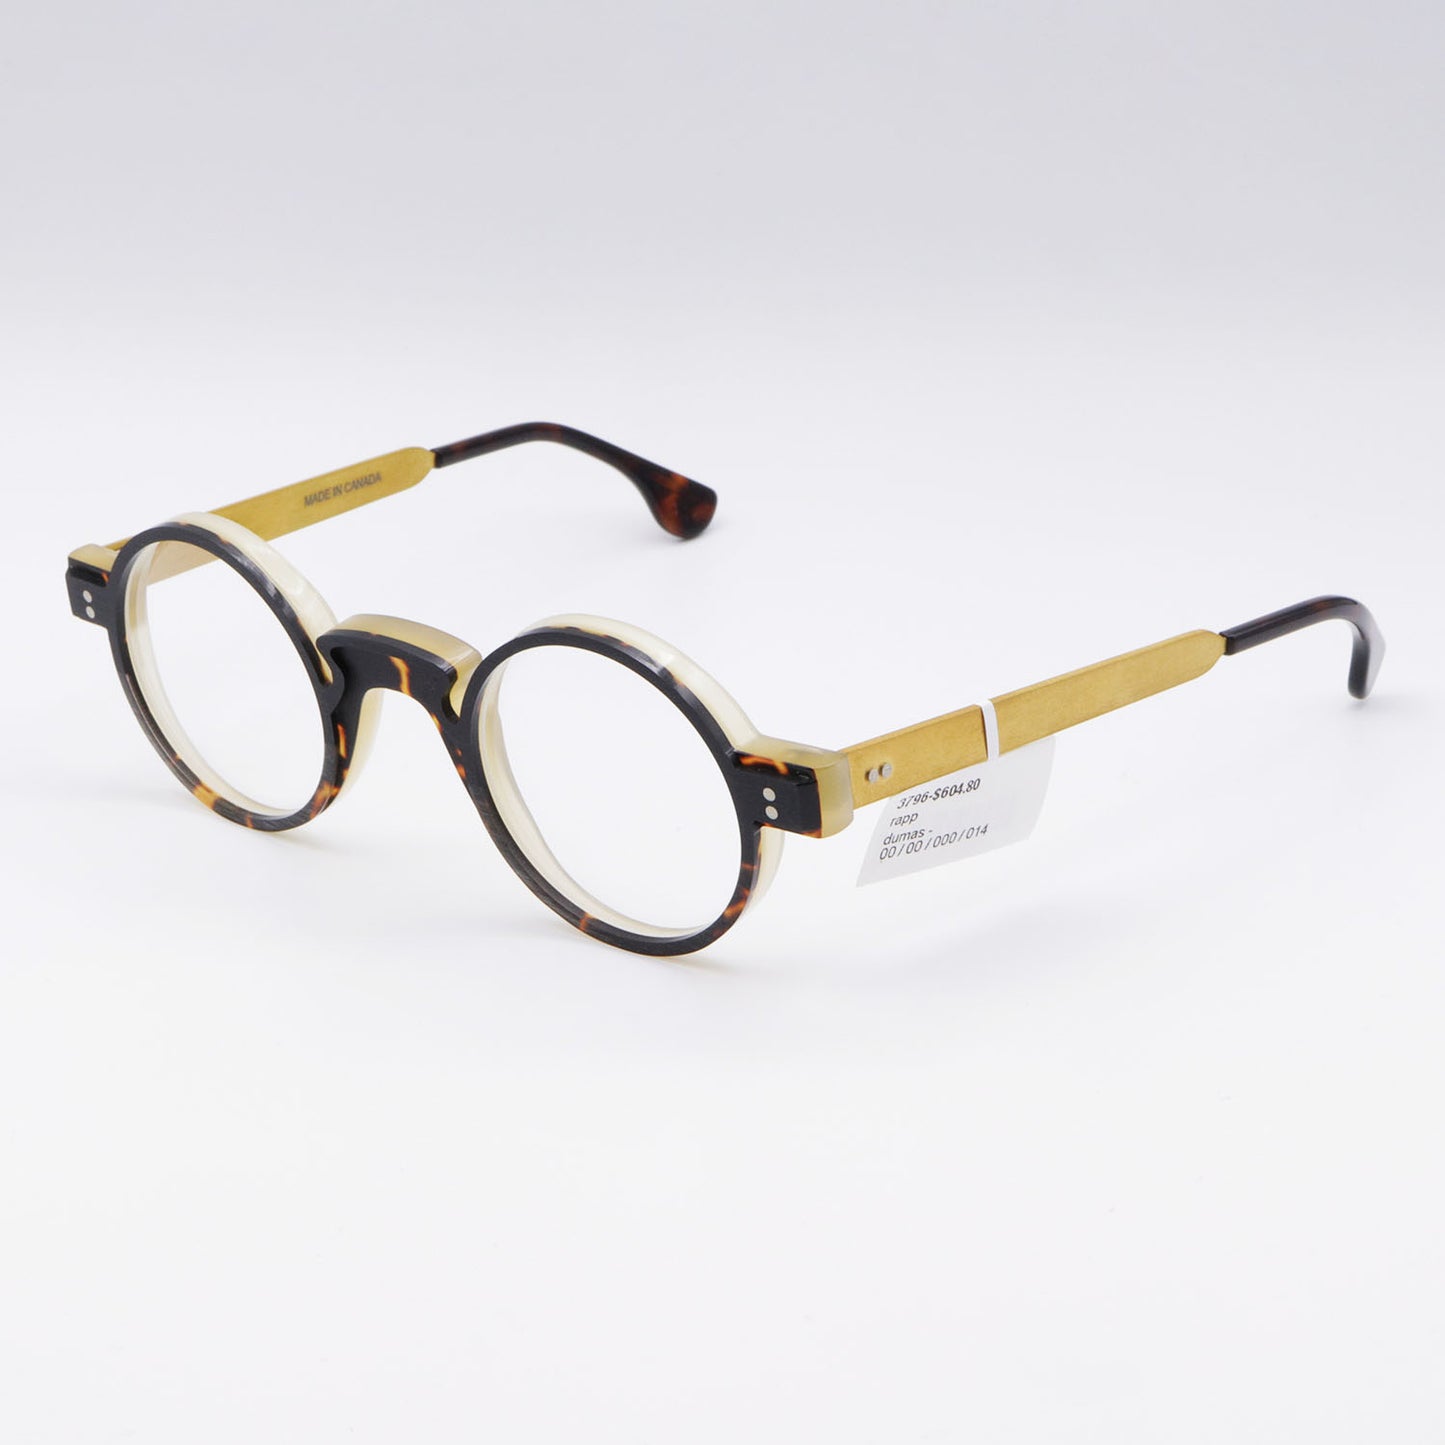 Dumas Rapp Frames Glasses Brown